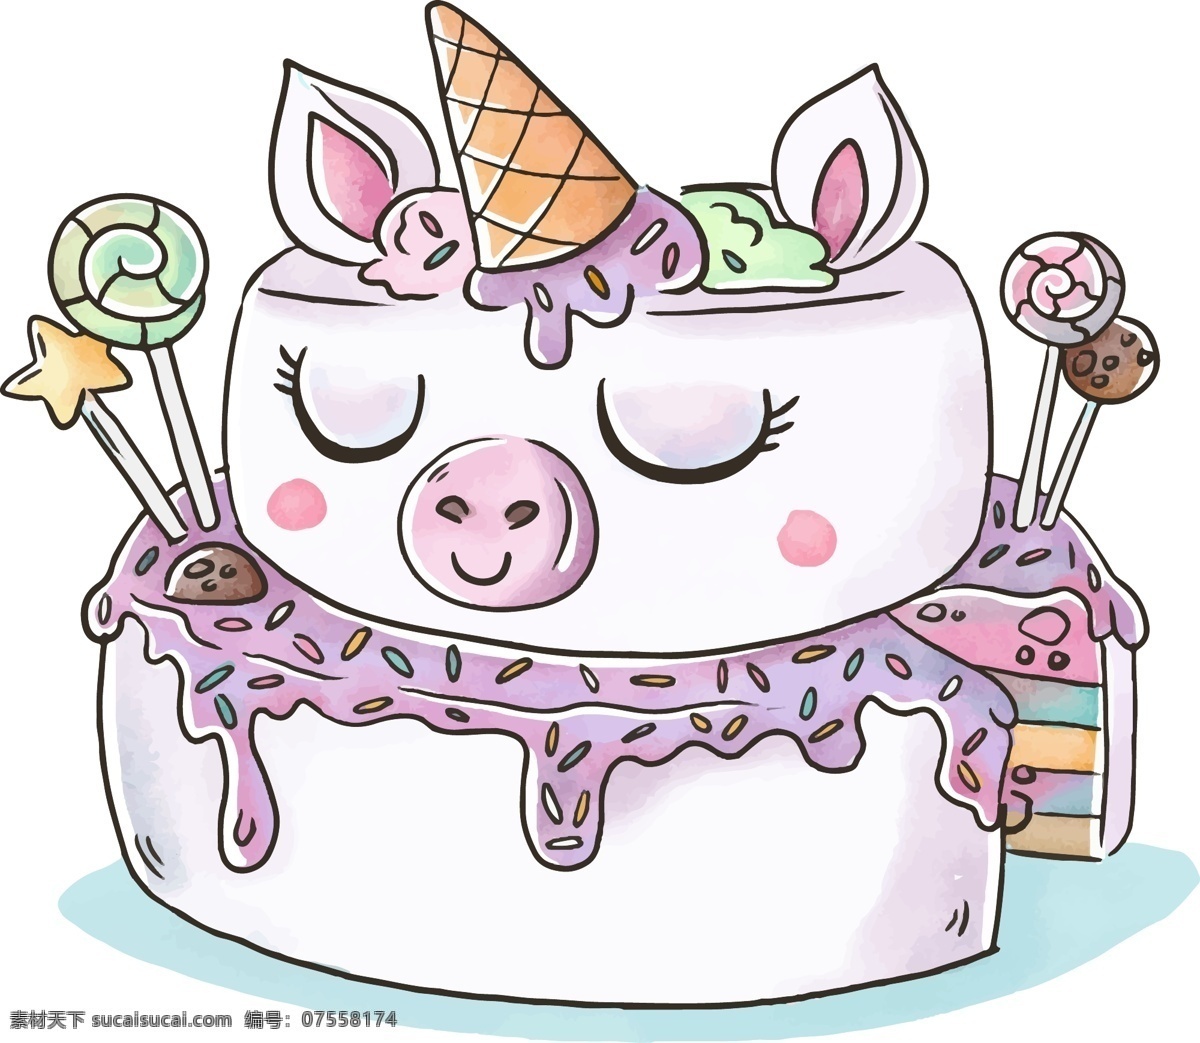 卡通 可爱 猪 彩虹 蛋糕 矢量 卡通猪 卡通棒棒糖 卡通蛋糕 卡通彩虹蛋糕 彩虹蛋糕 紫色奶油 奶油蛋糕 美味蛋糕